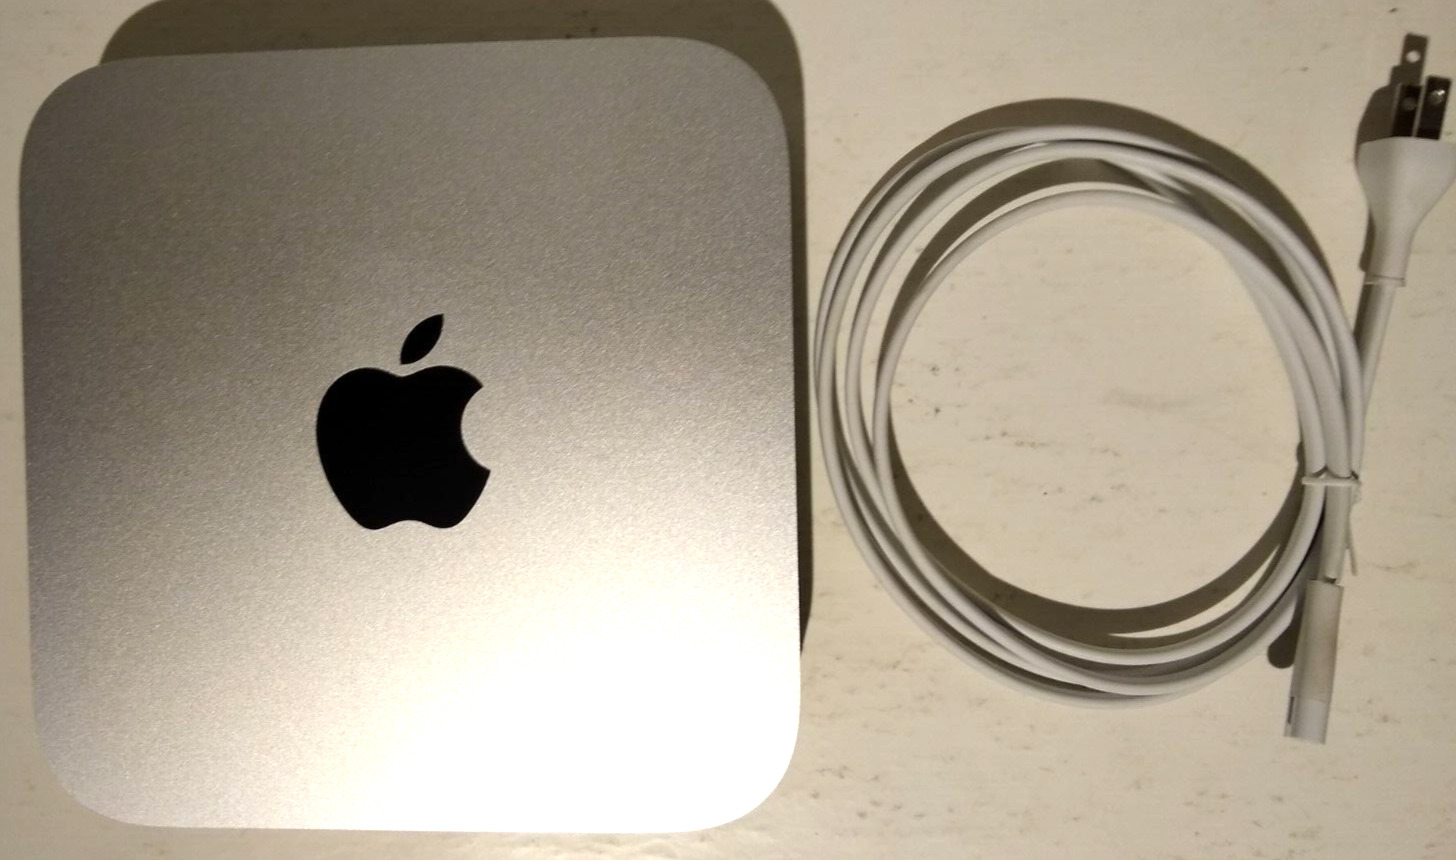 Apple Mac Mini A1347 i5-3210M 2.5GHz 4GB 500GB HDD Desktop Computer W/ Cord